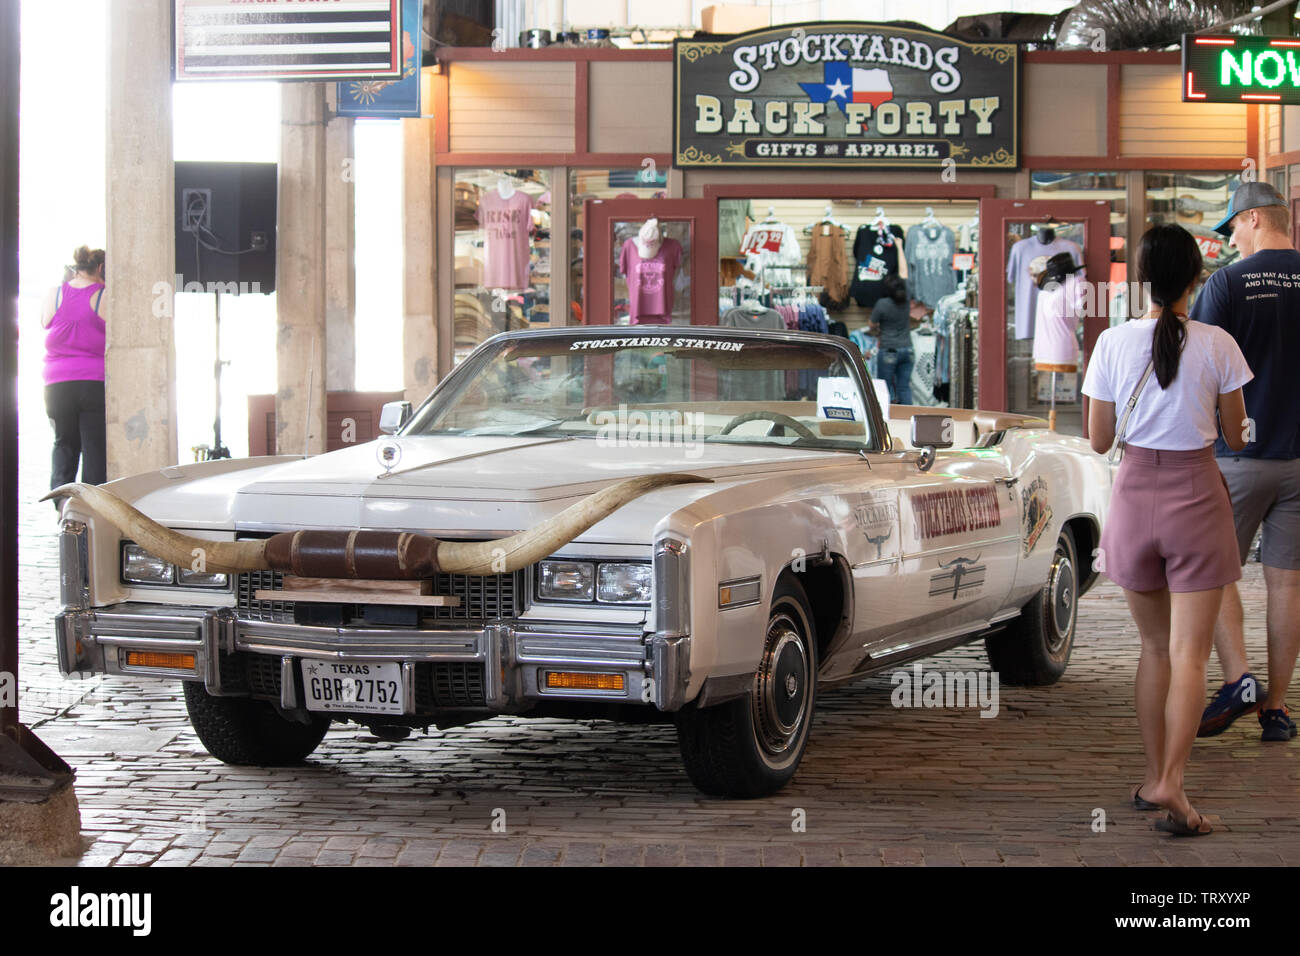 Une voiture américaine classique avec des cornes attachées à la calandre à l'affiche au Fort Worth Stockyards historic district Banque D'Images